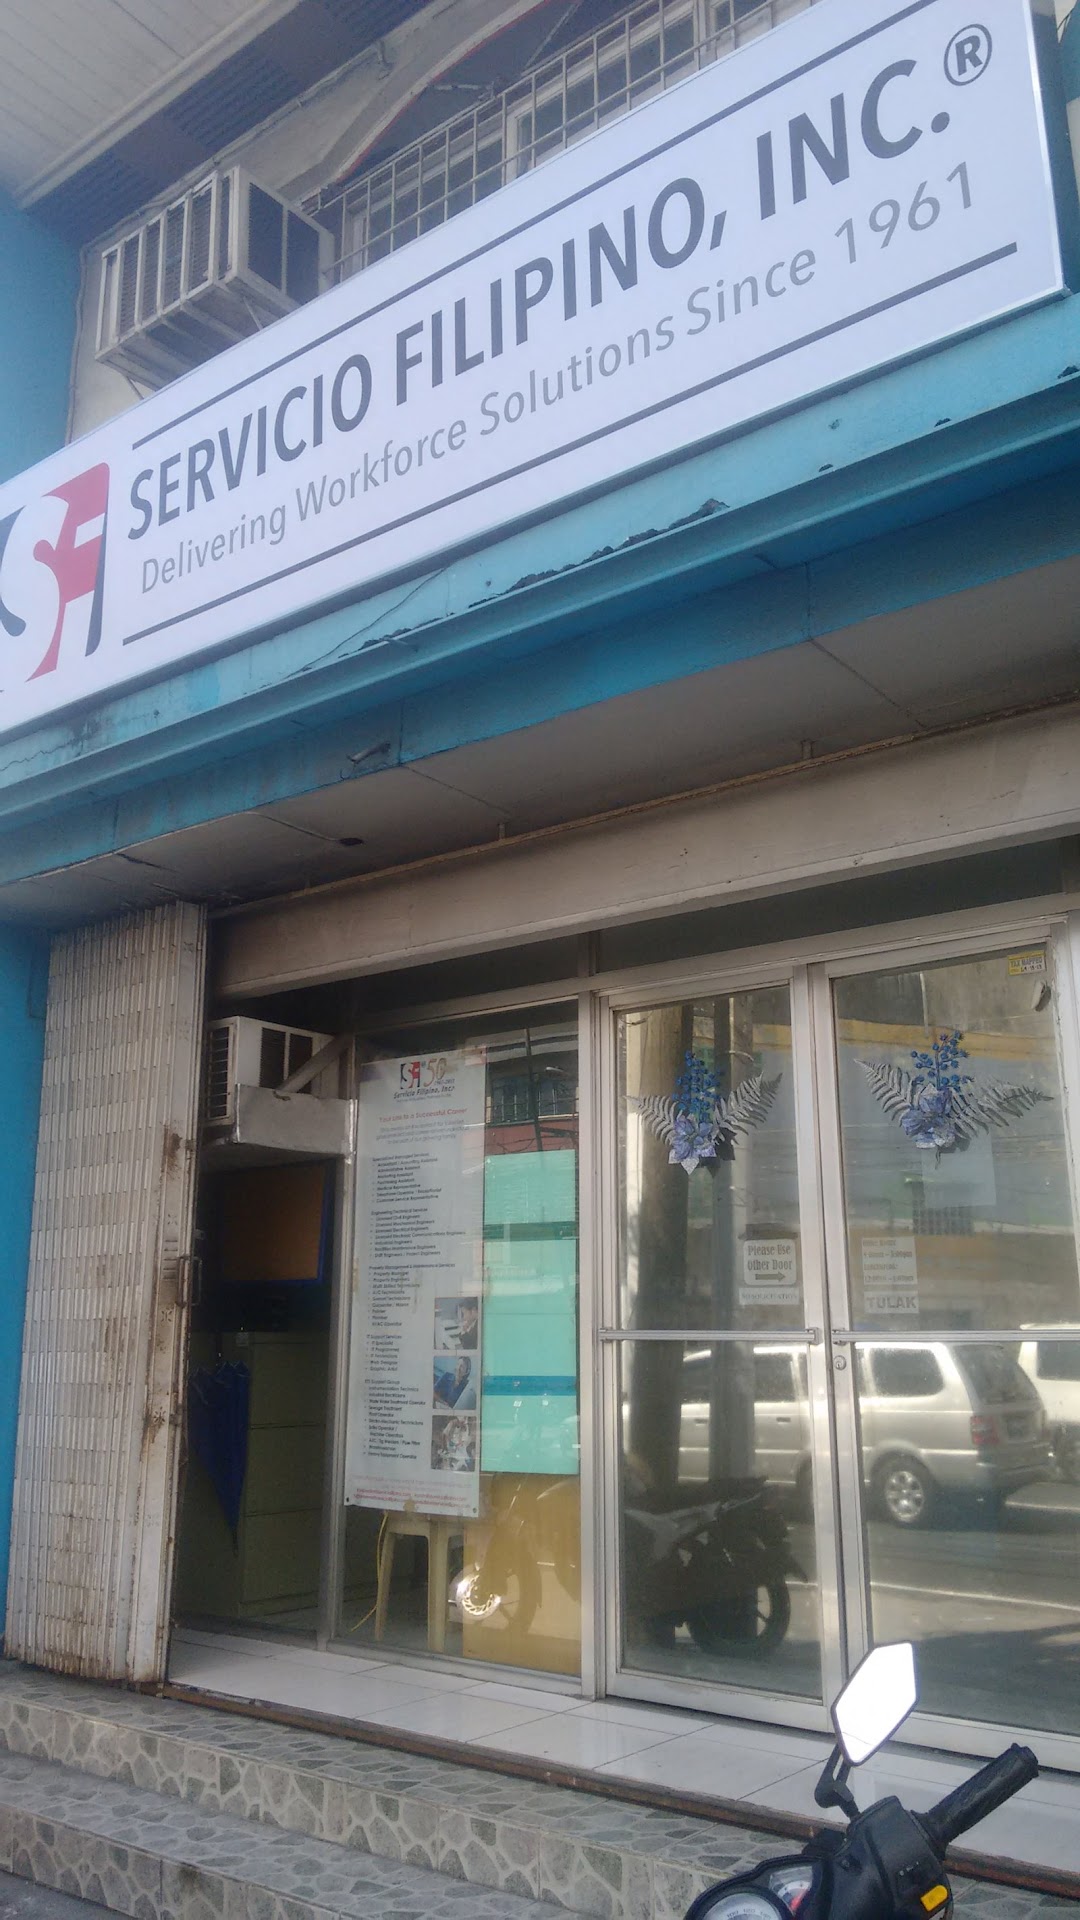 Servicio Filipino, Inc.